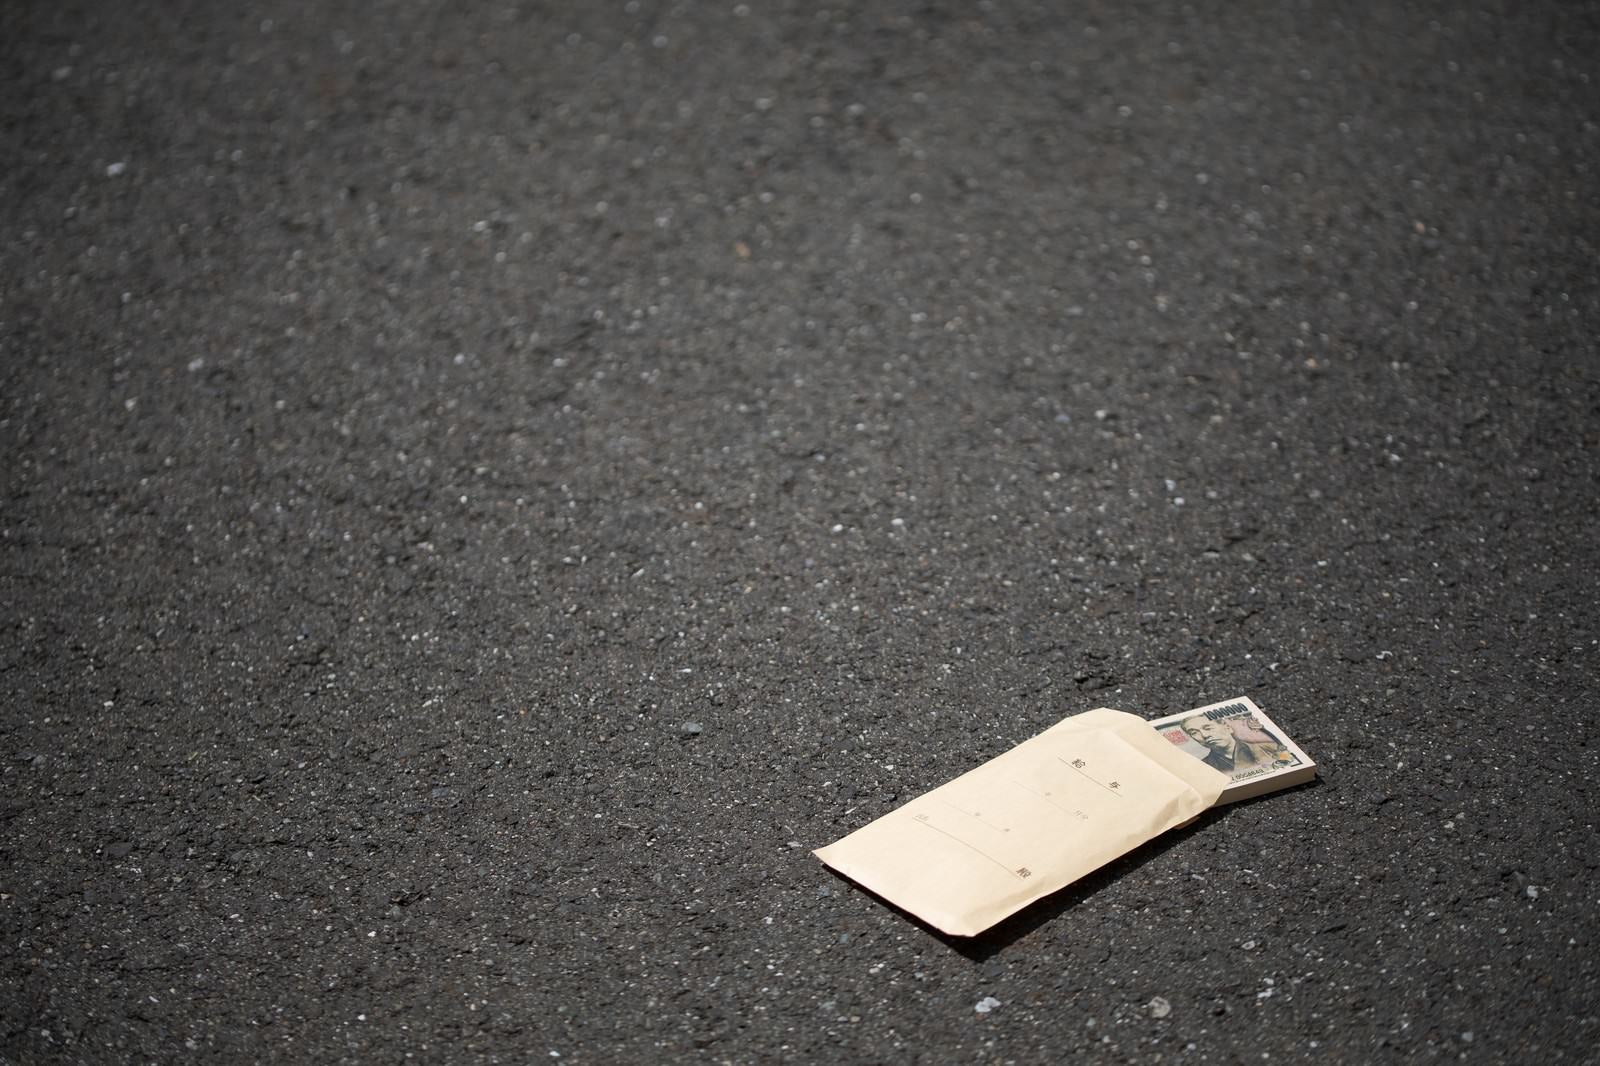 「道端に落ちた札束トラップ」の写真